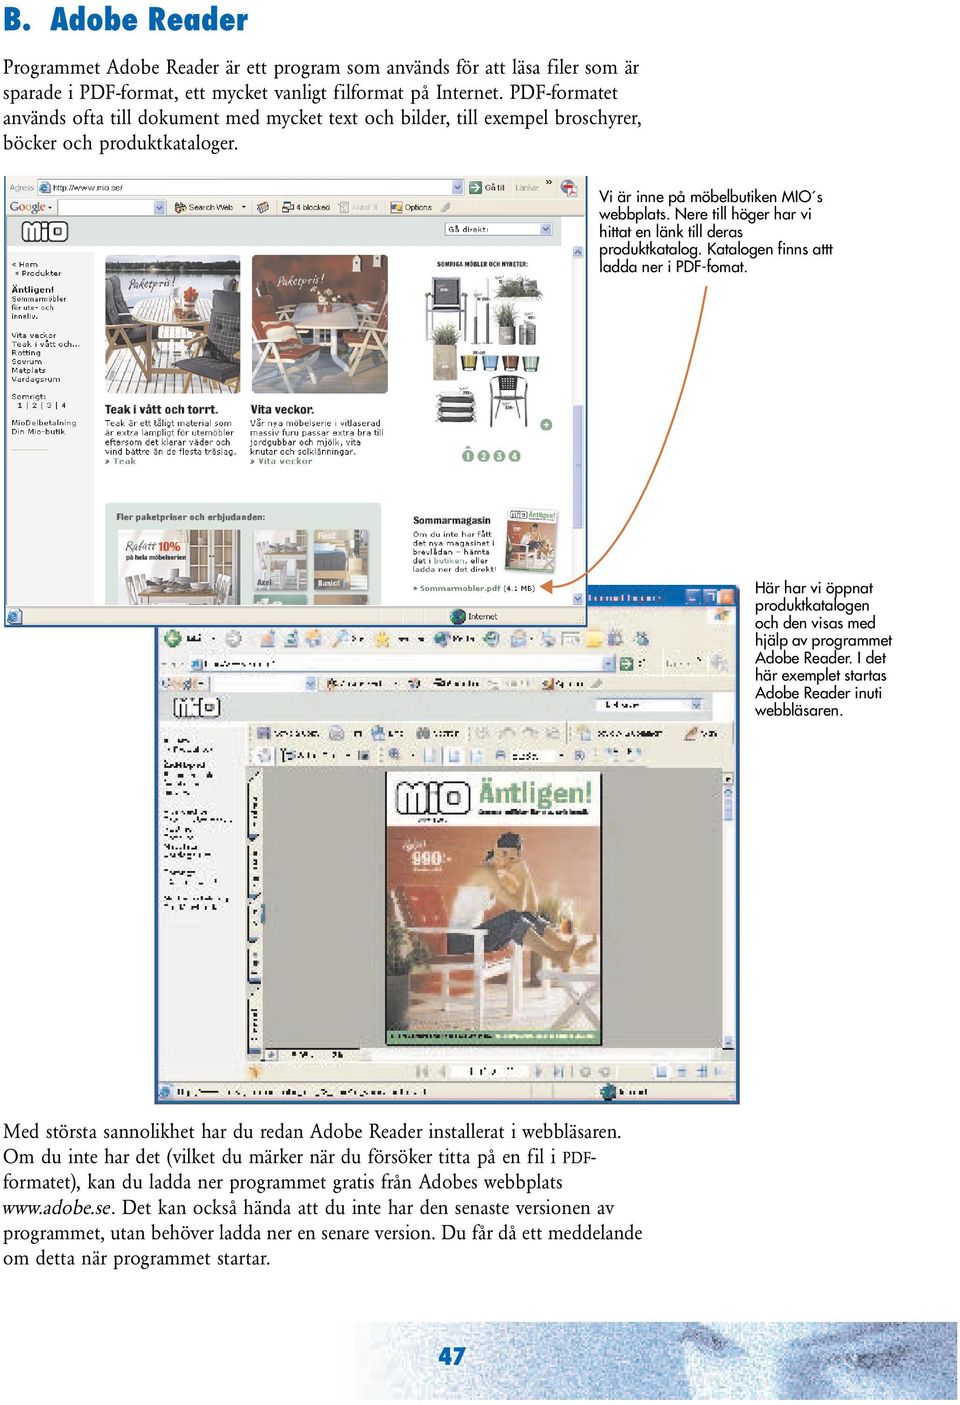 Nere till höger har vi hittat en länk till deras produktkatalog. Katalogen finns attt ladda ner i PDF-fomat. Här har vi öppnat produktkatalogen och den visas med hjälp av programmet Adobe Reader.